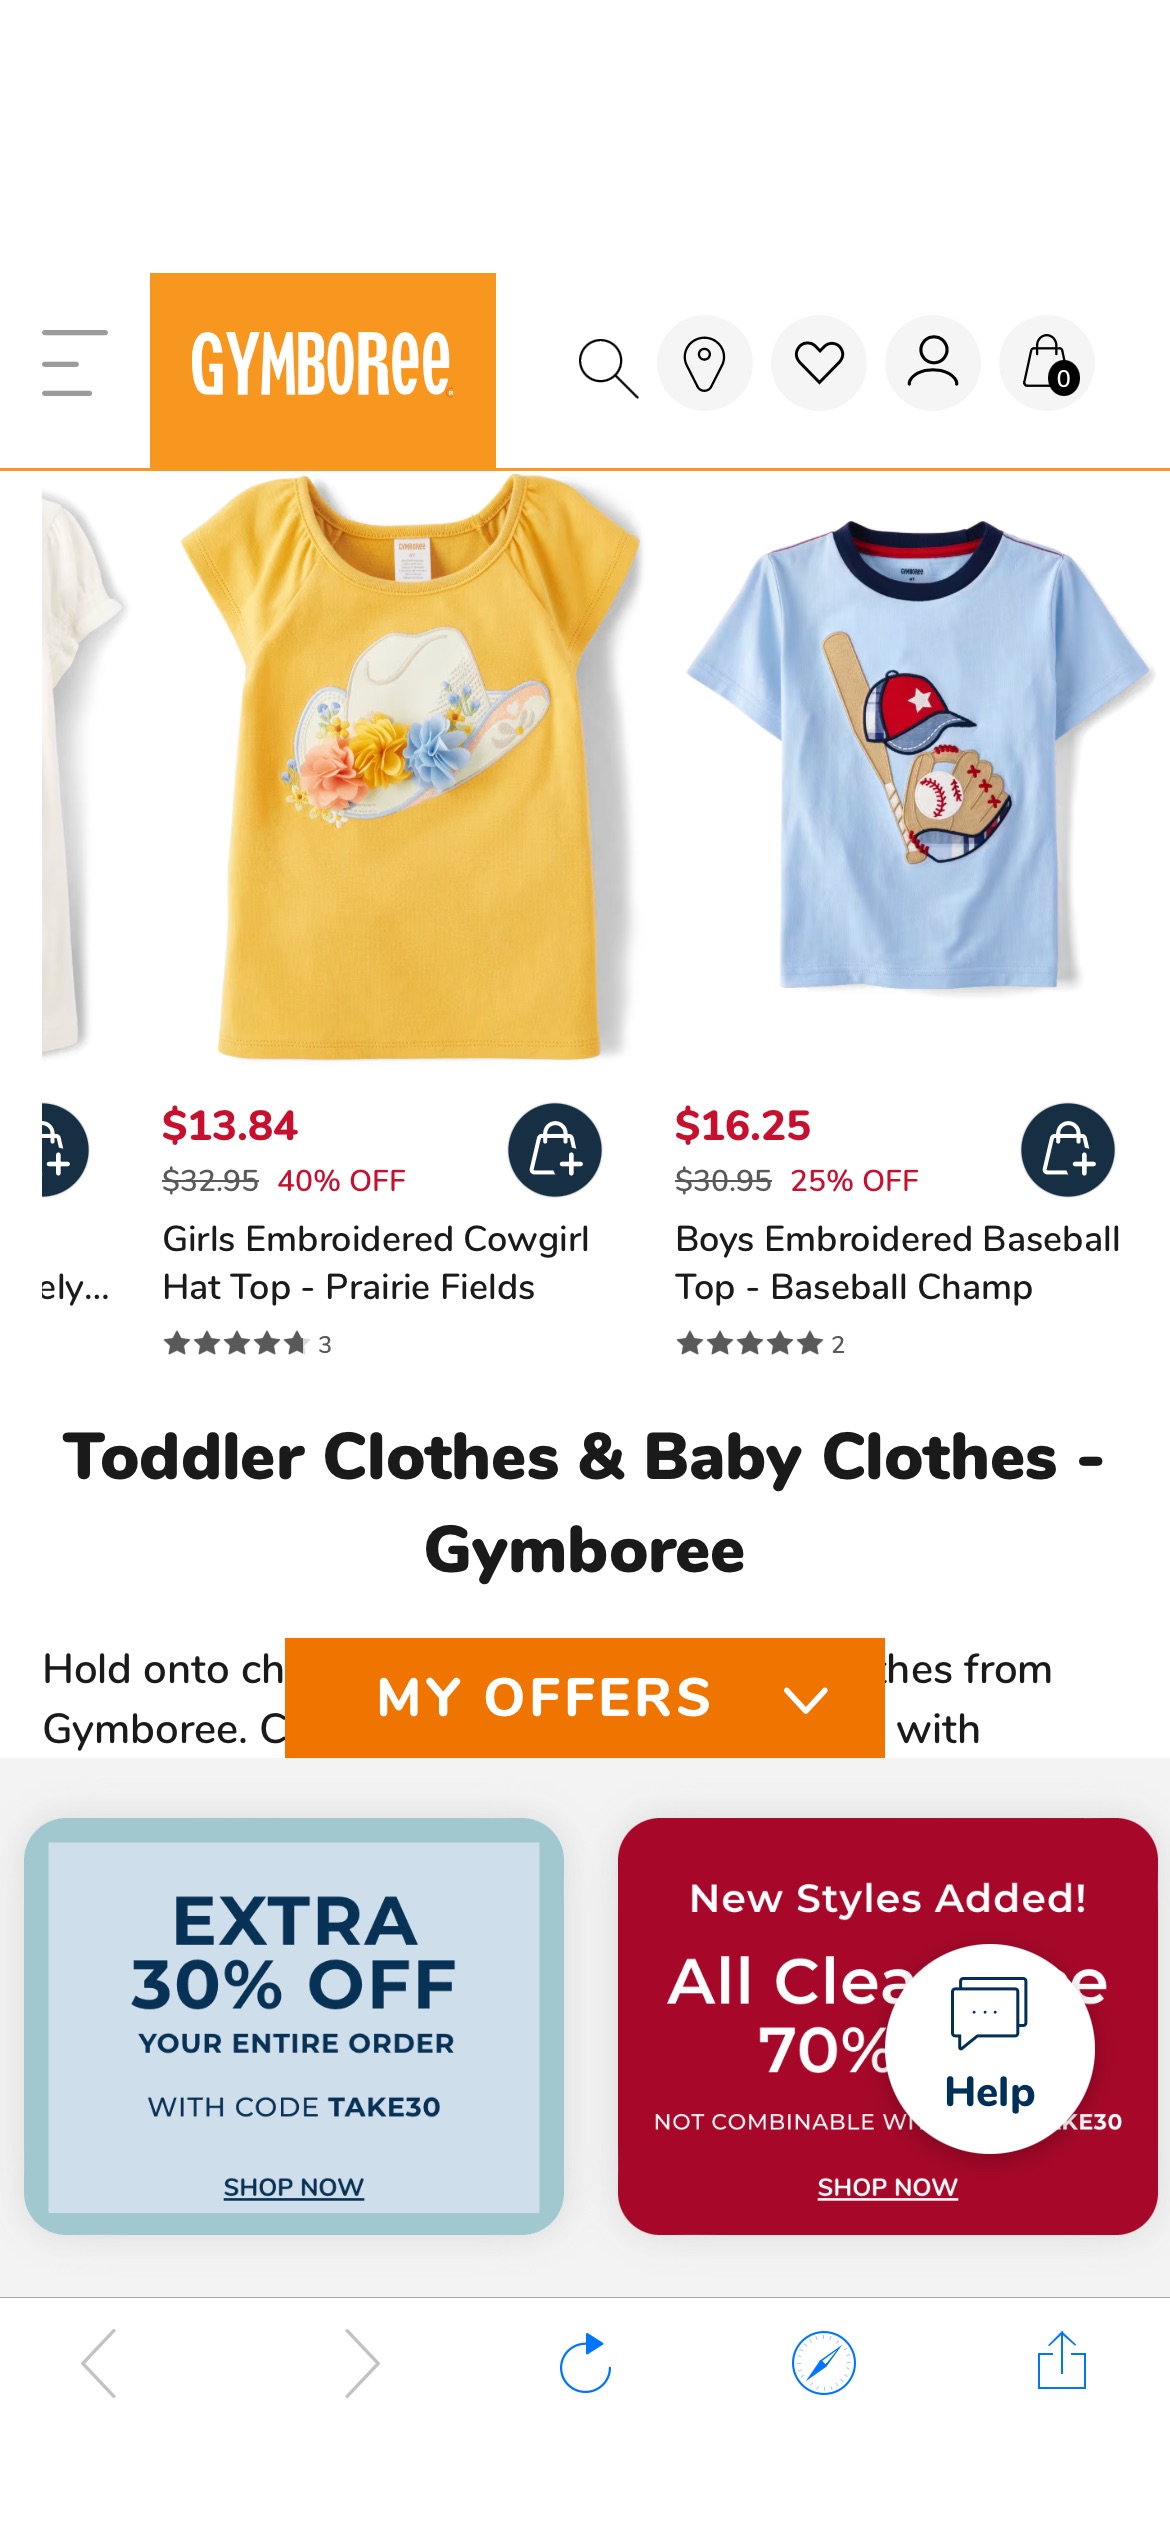 Toddler Clothes & Baby Clothes | Gymboree Gymboree：

购买前3名夏季系列可享受高达50%的折扣：American Cutie、Linen Shop和Bon Voyage！